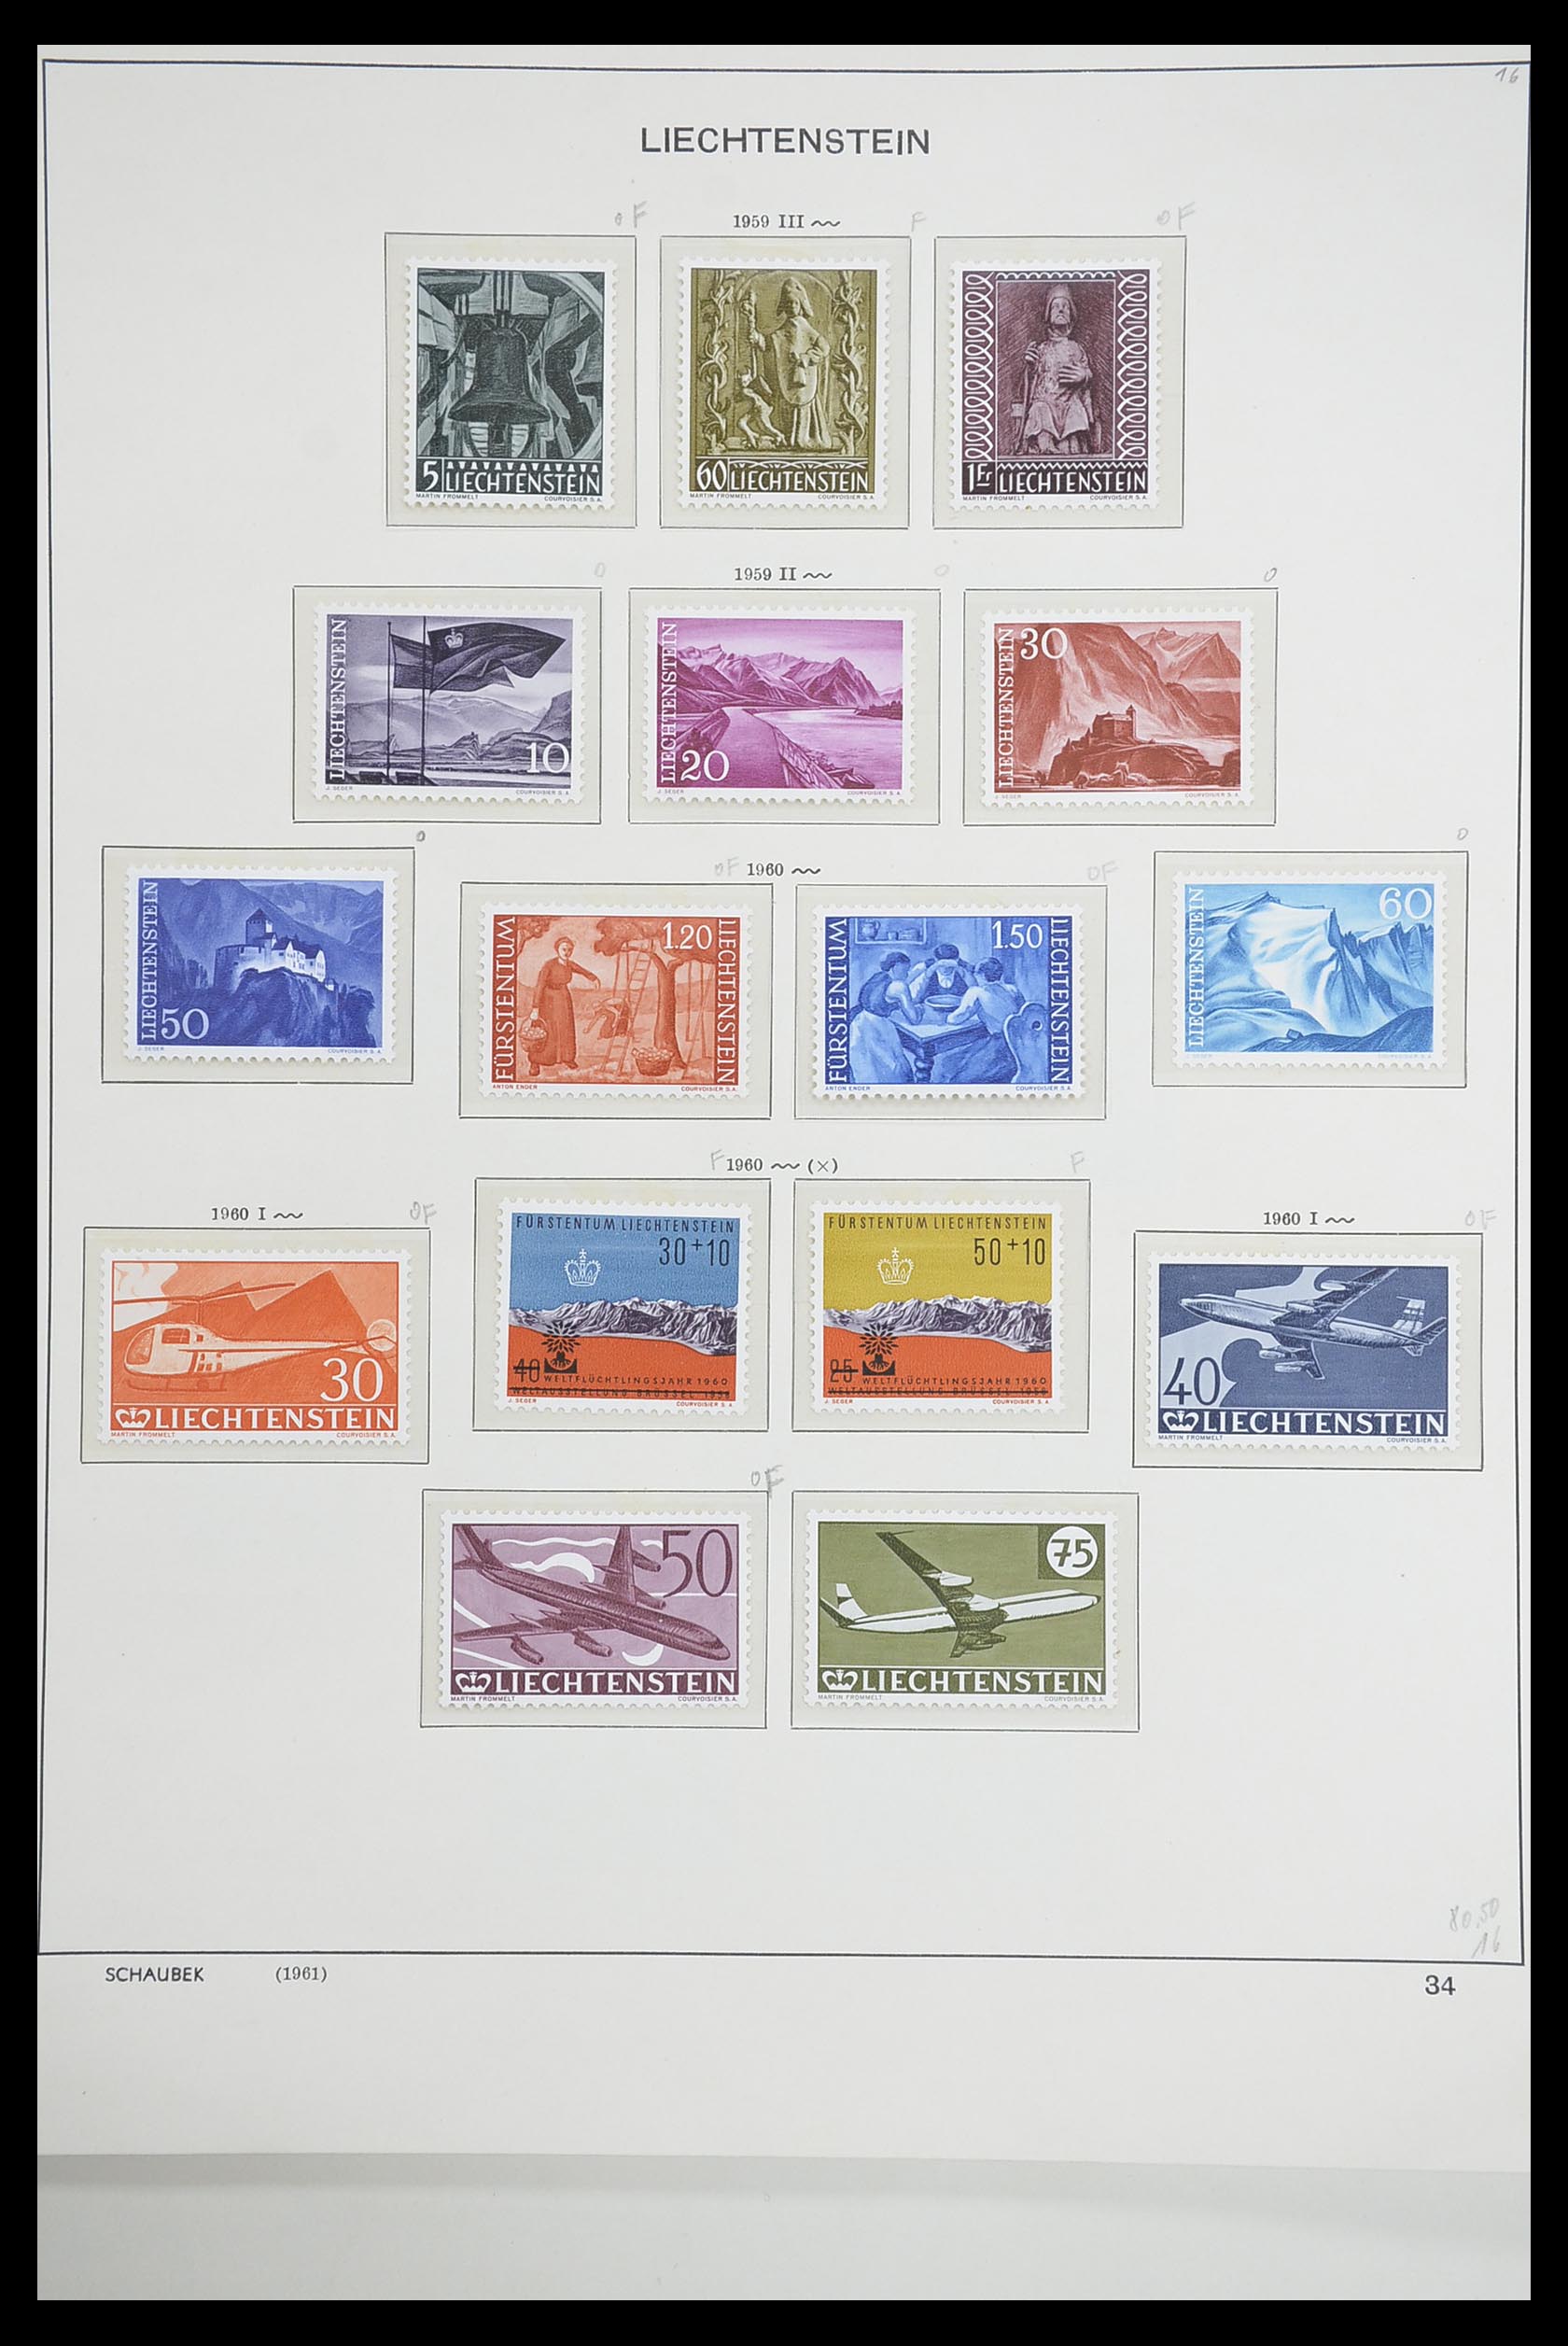 33274 035 - Stamp collection 33274 Liechtenstein 1912-1996.